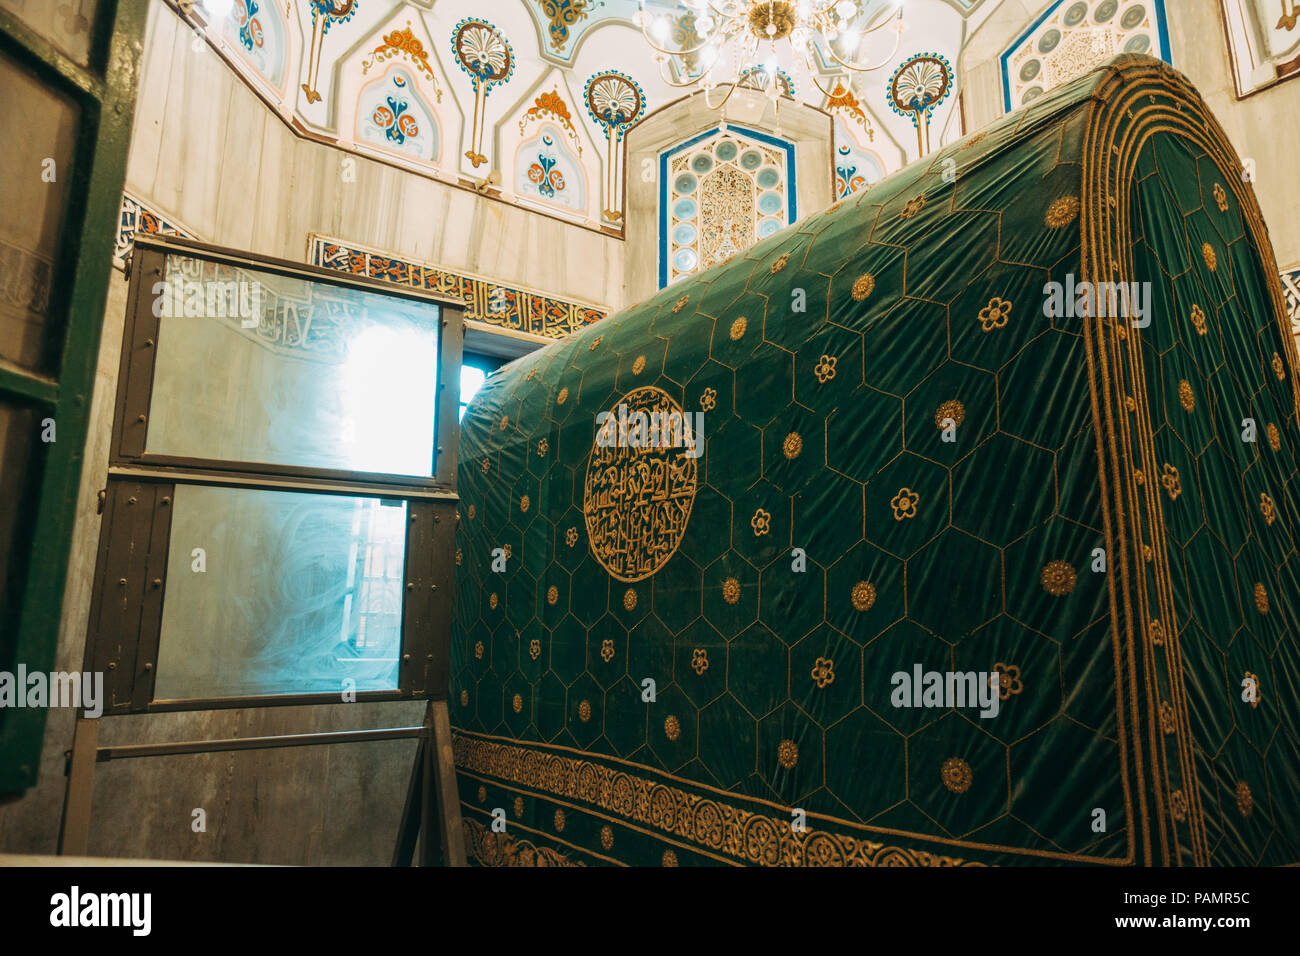 Un pannello di vetro antiproiettile oscura la linea diretta di vista tra musulmani ed ebrei i lati della tomba di Grotta dei patriarchi / moschea Ibrahimi Foto Stock